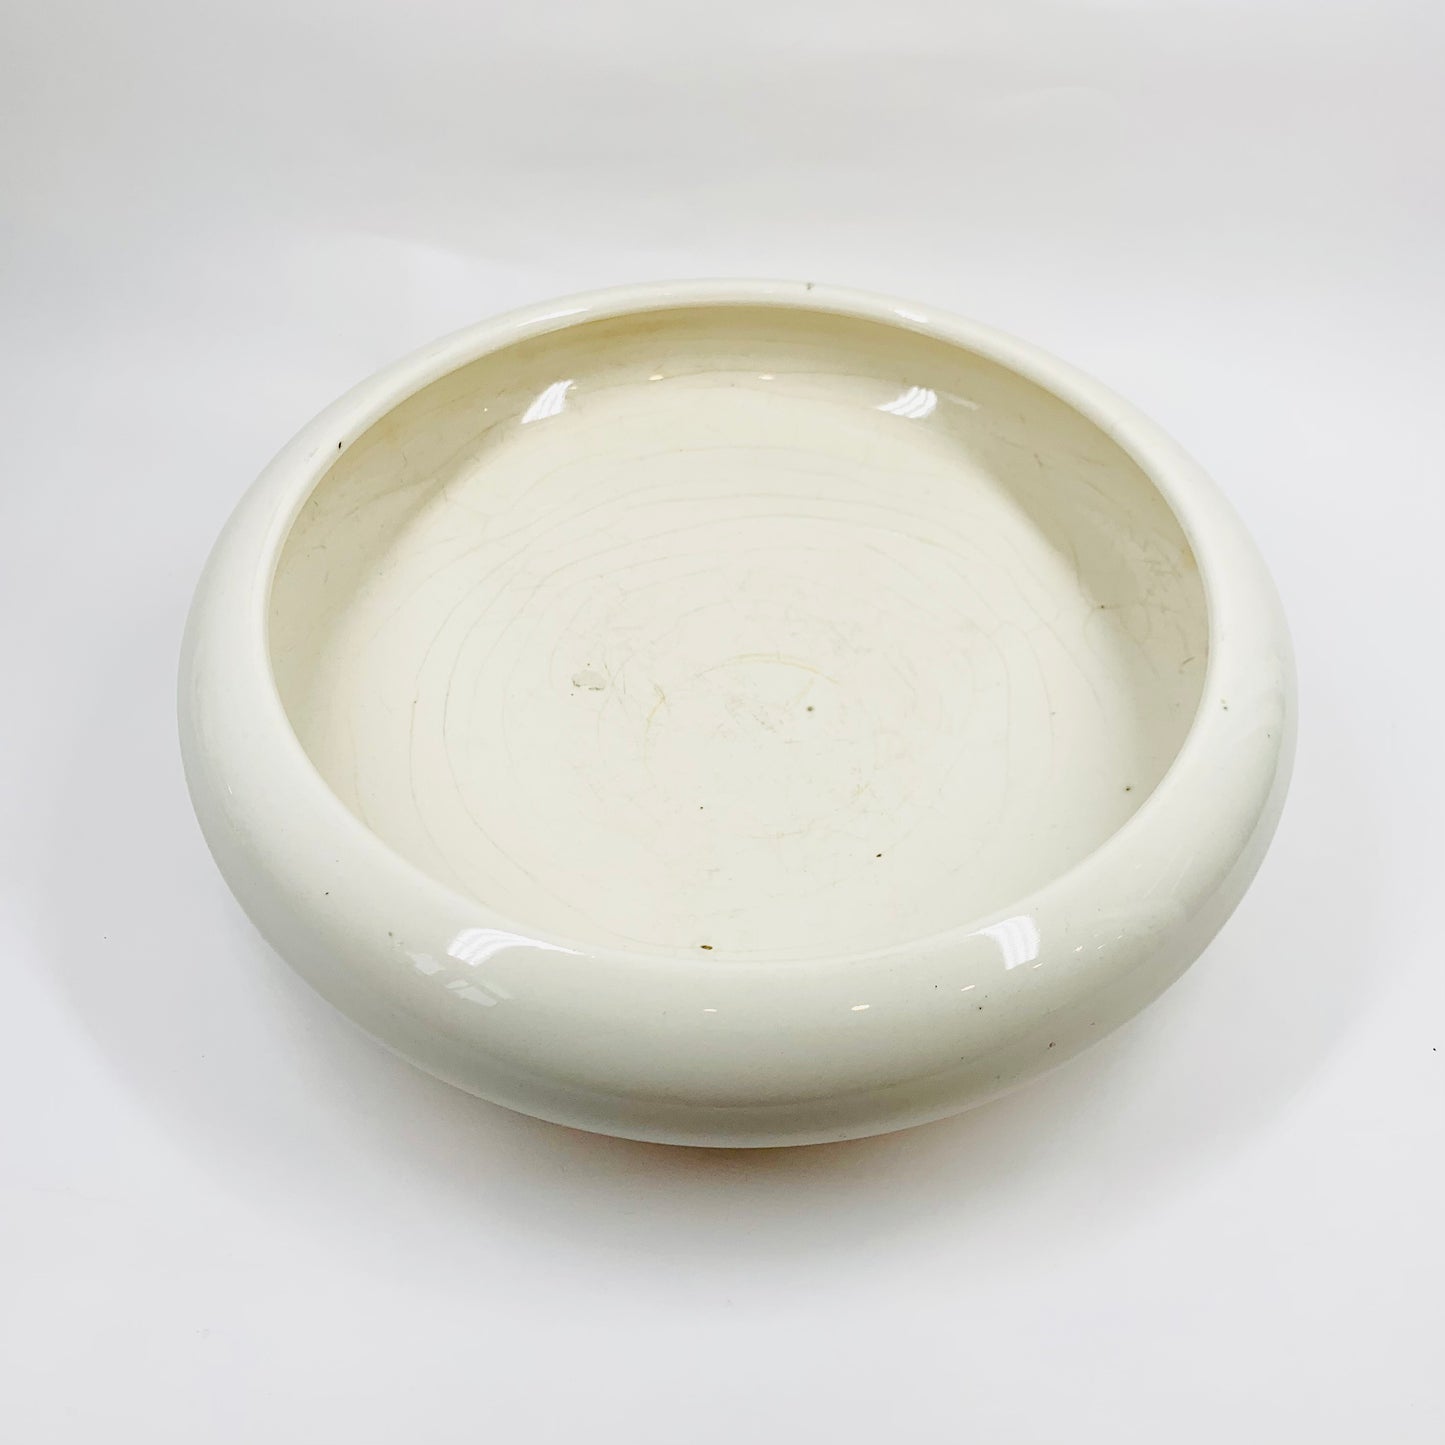 Antique Japanese white pottery shallow bowl/vase used for ikebana